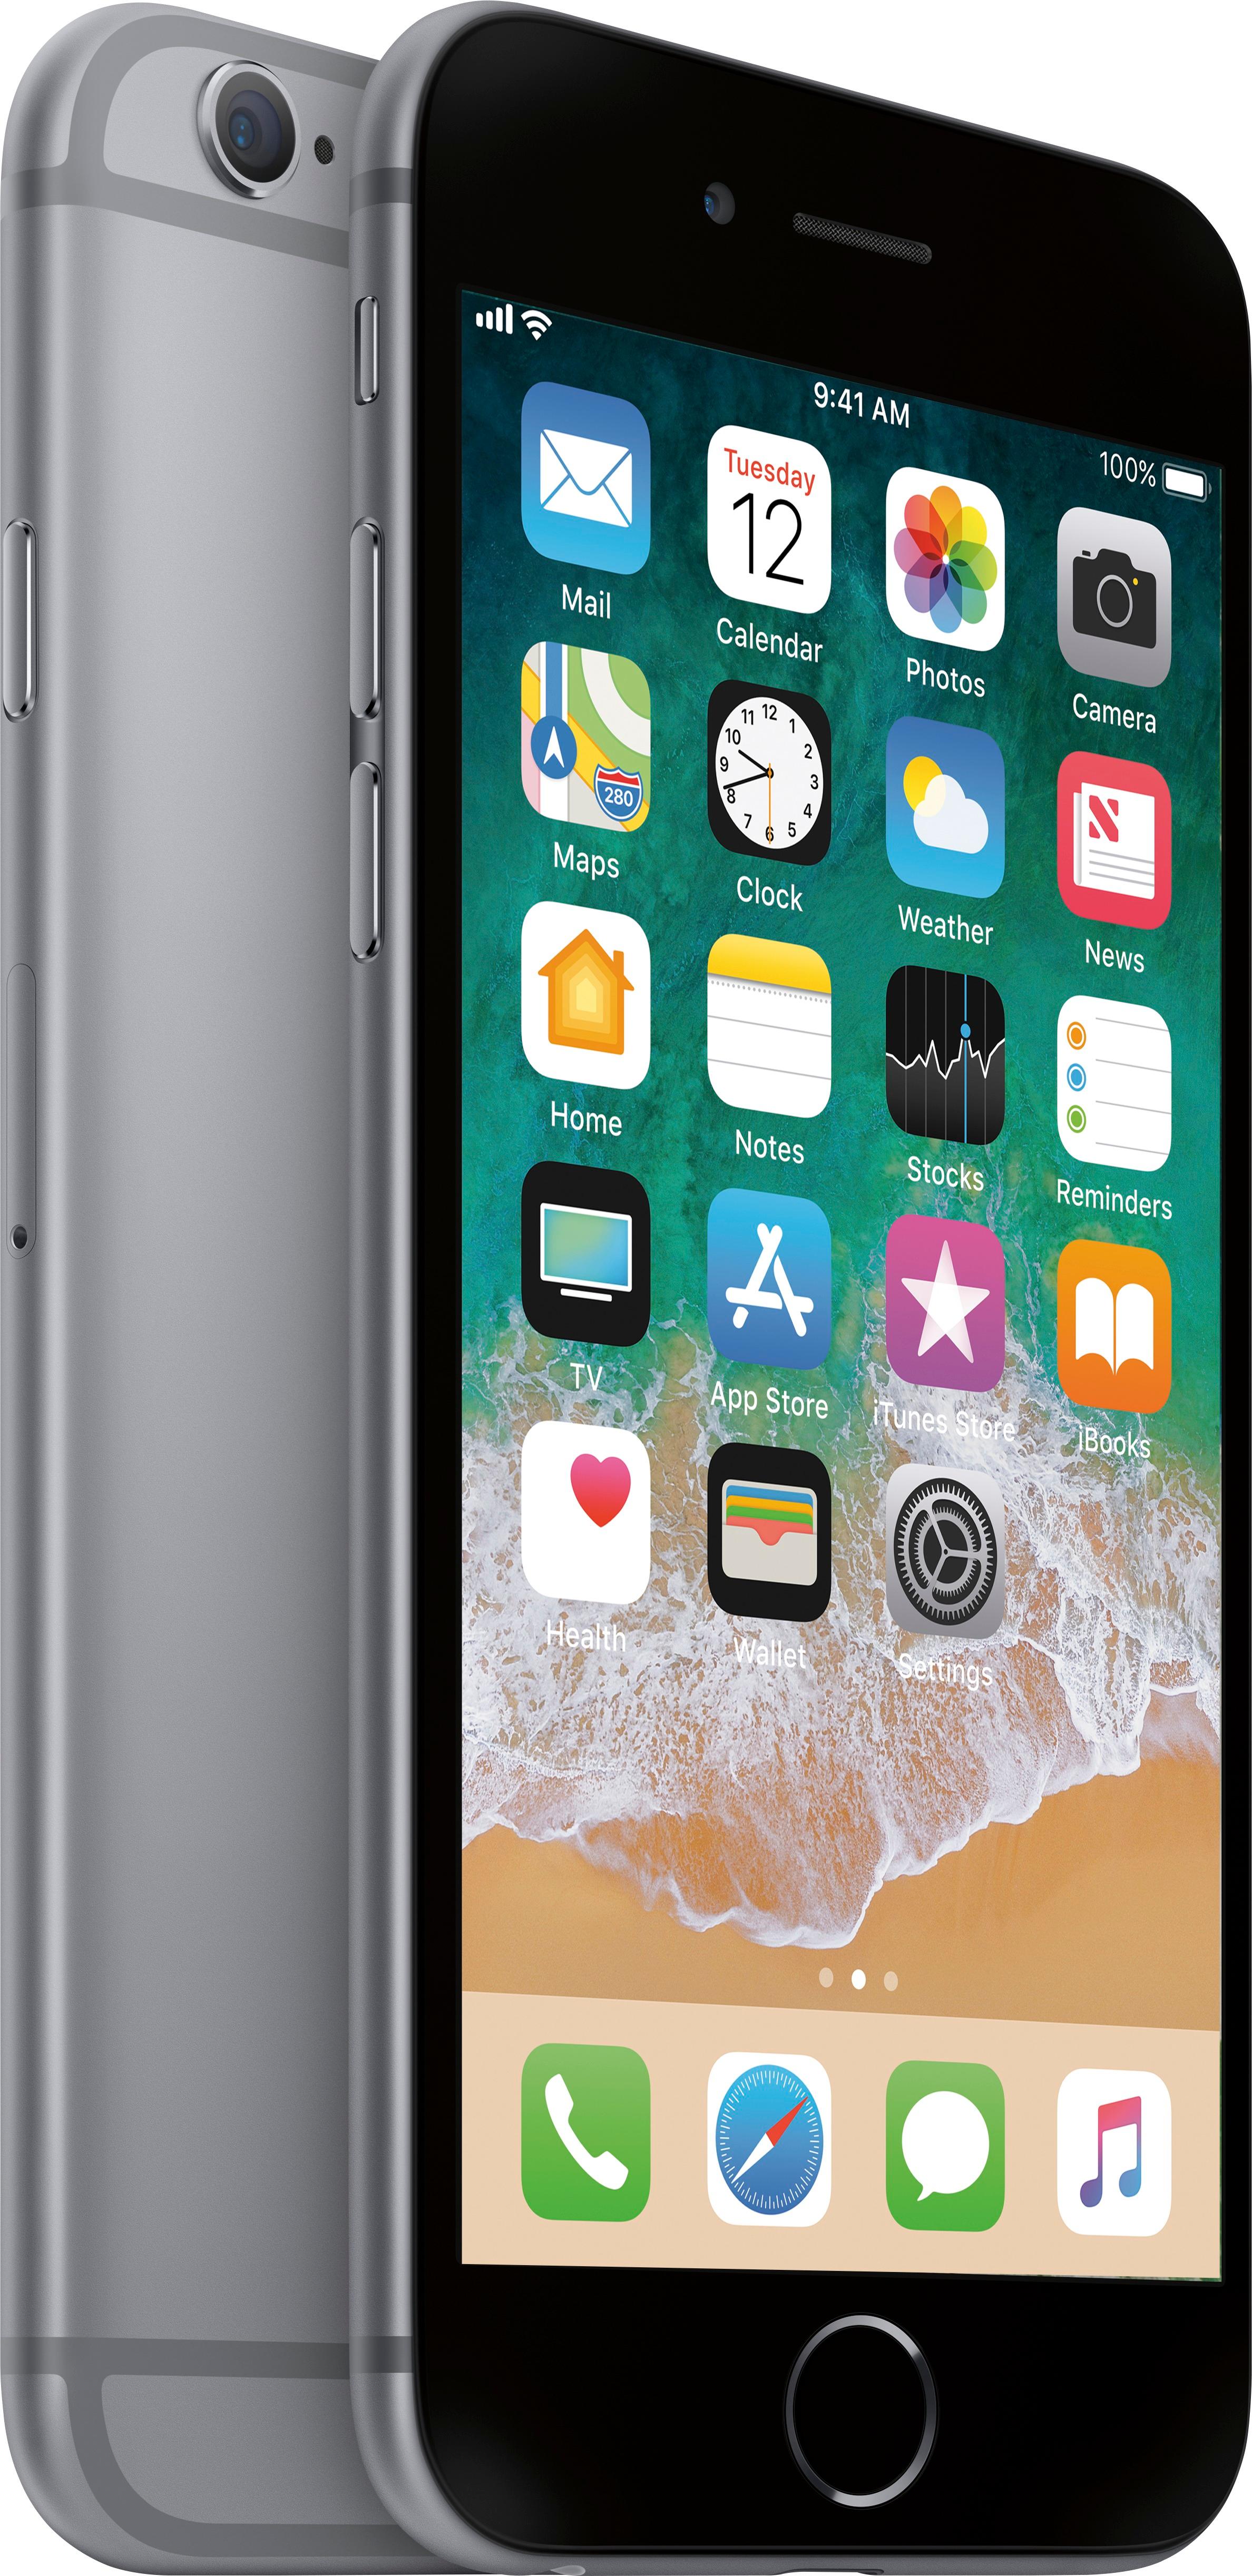 スマートフォン/携帯電話 スマートフォン本体 Best Buy: Apple iPhone 6s 16GB Space Gray (AT&T) MKQ52LL/A